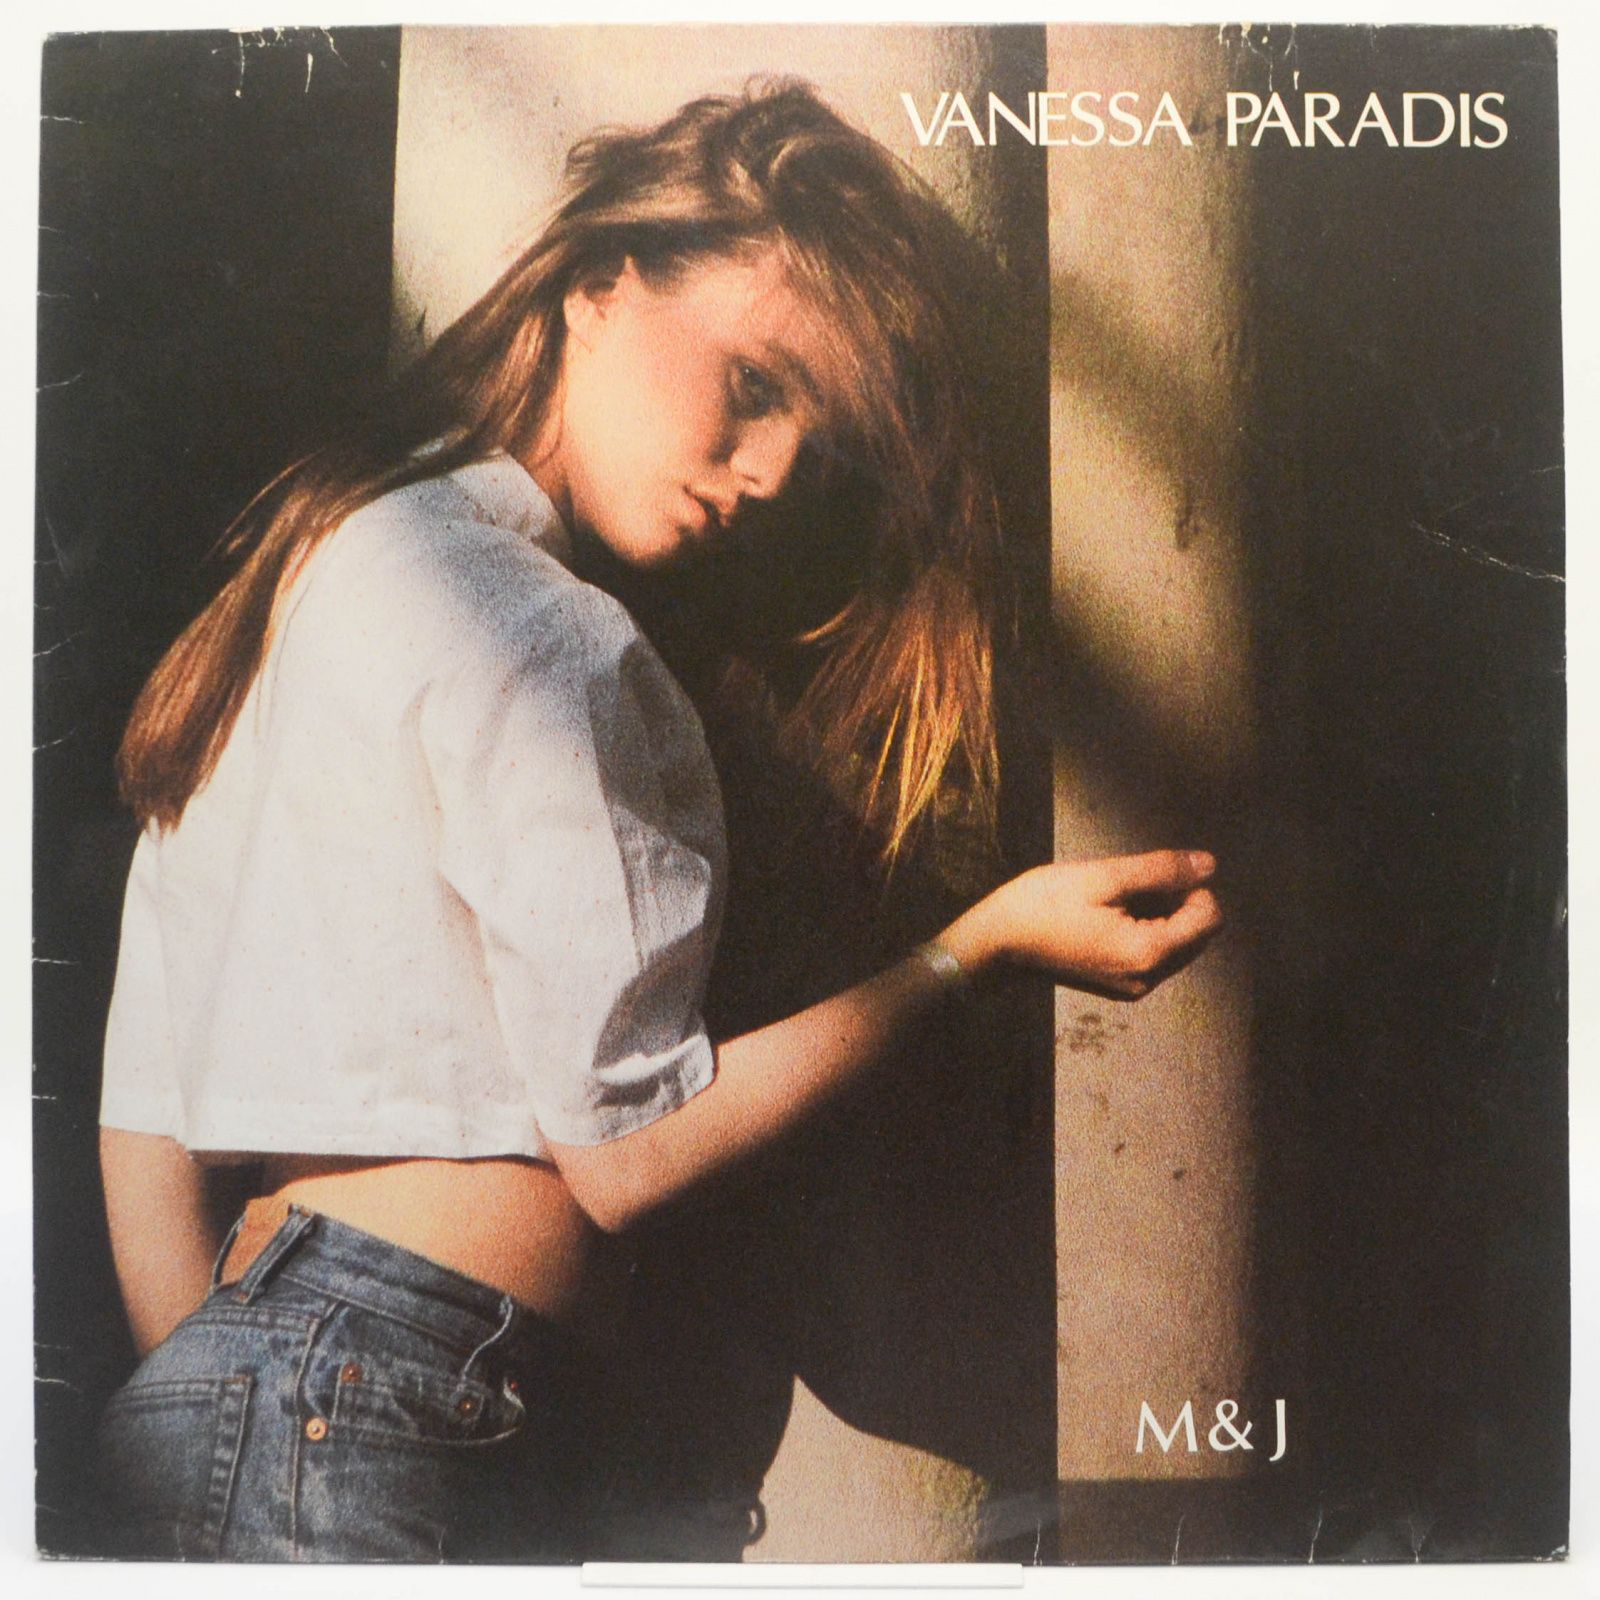 Vanessa Paradis — M & J, 1988